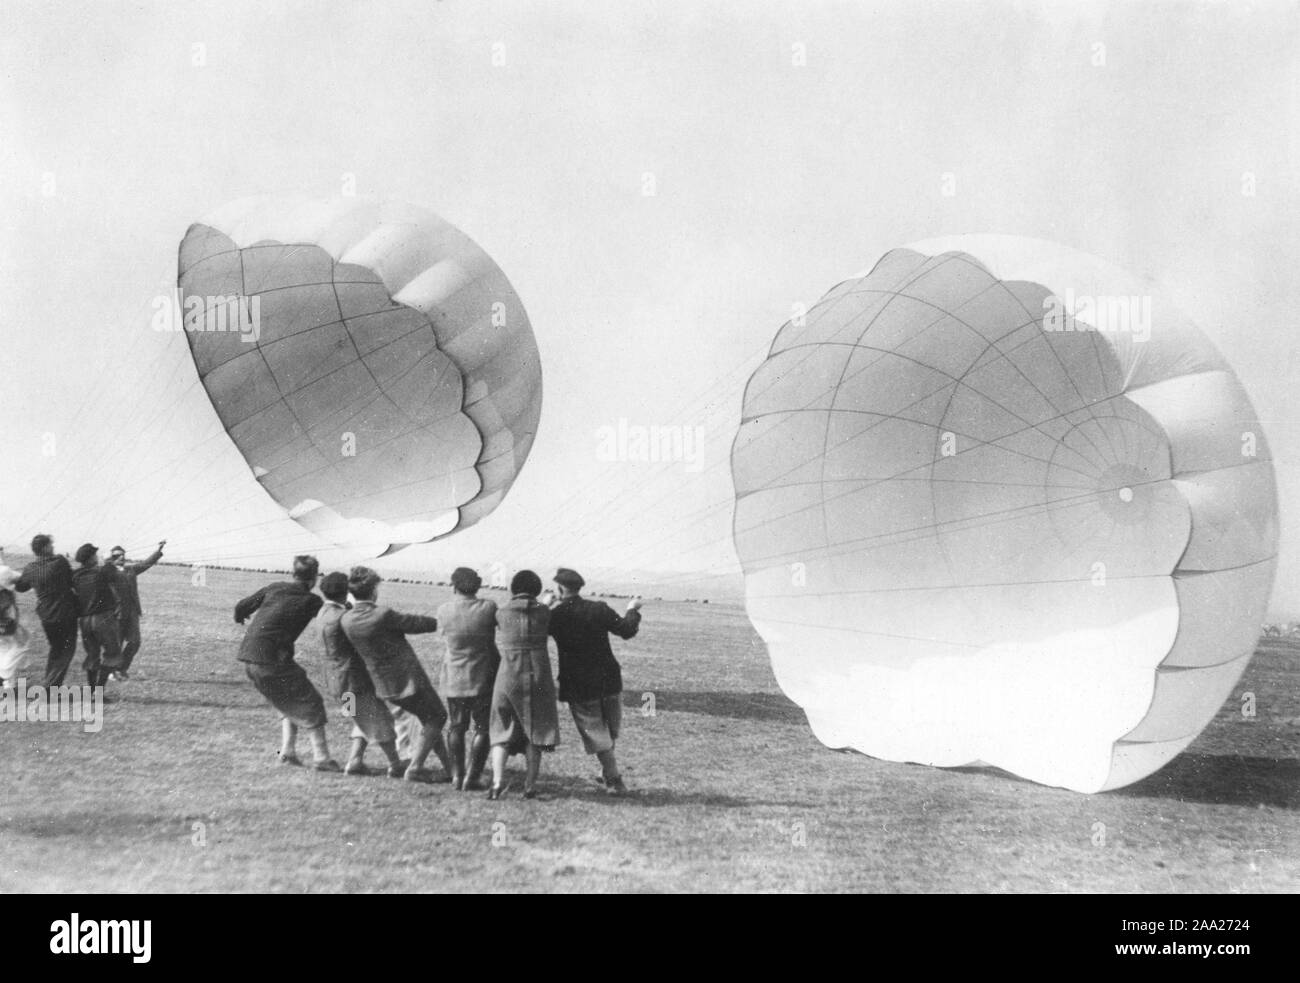 Formation de parachutistes dans les années 1930. Une école pour la formation de parachutistes sont et connaître le fonctionnement d'un parachute fonctionne. Ils essayent de leur parachute et les tenir contre le vent. Allemagne 1930 Banque D'Images